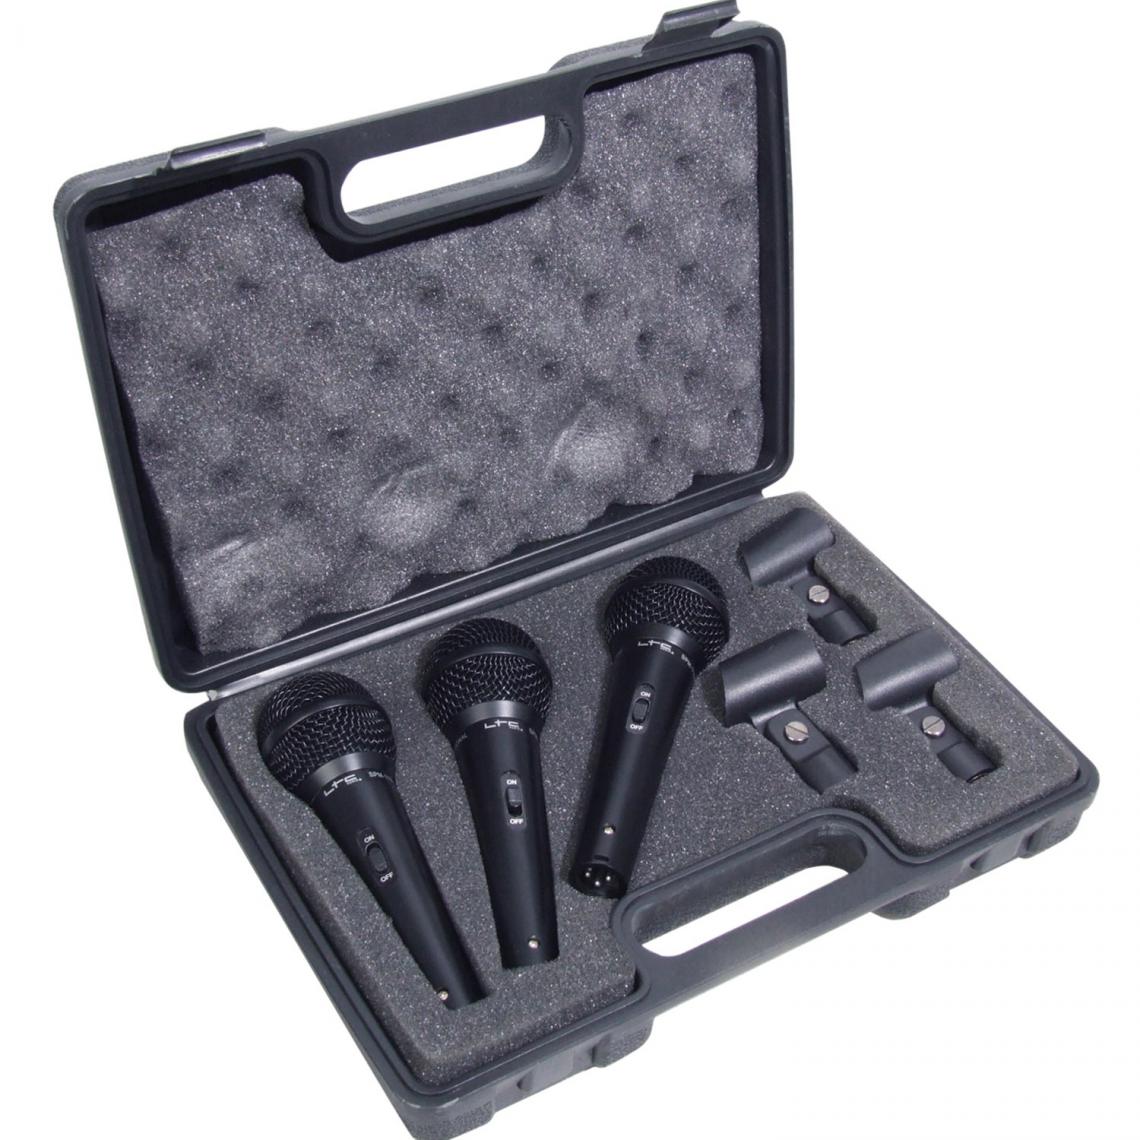 Soundlab - Kit de microphone vocal professionnel filaire dynamique Soundlab avec 3 microphones et étui de transport - Accessoires DJ